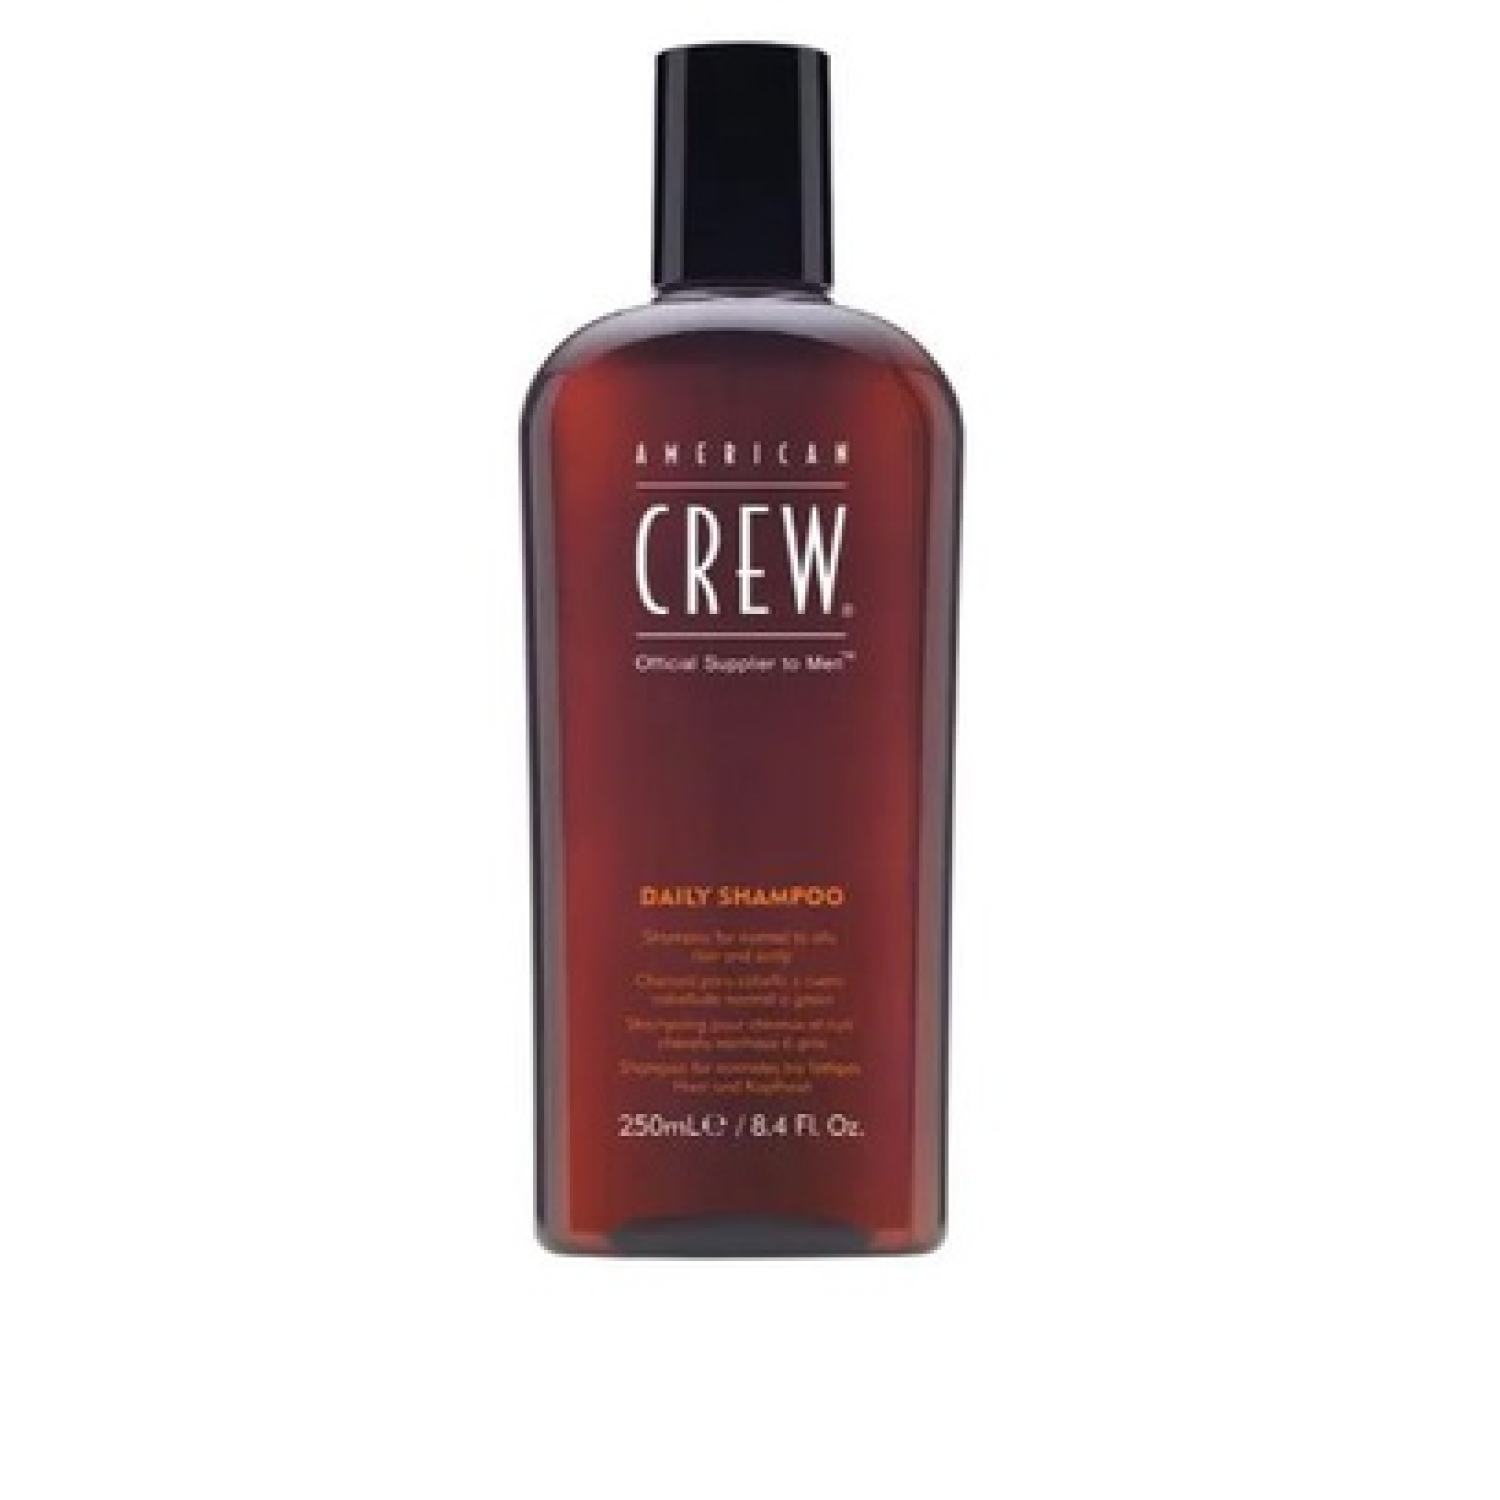 American Crew daily shampoo cho nam hàng Mỹ